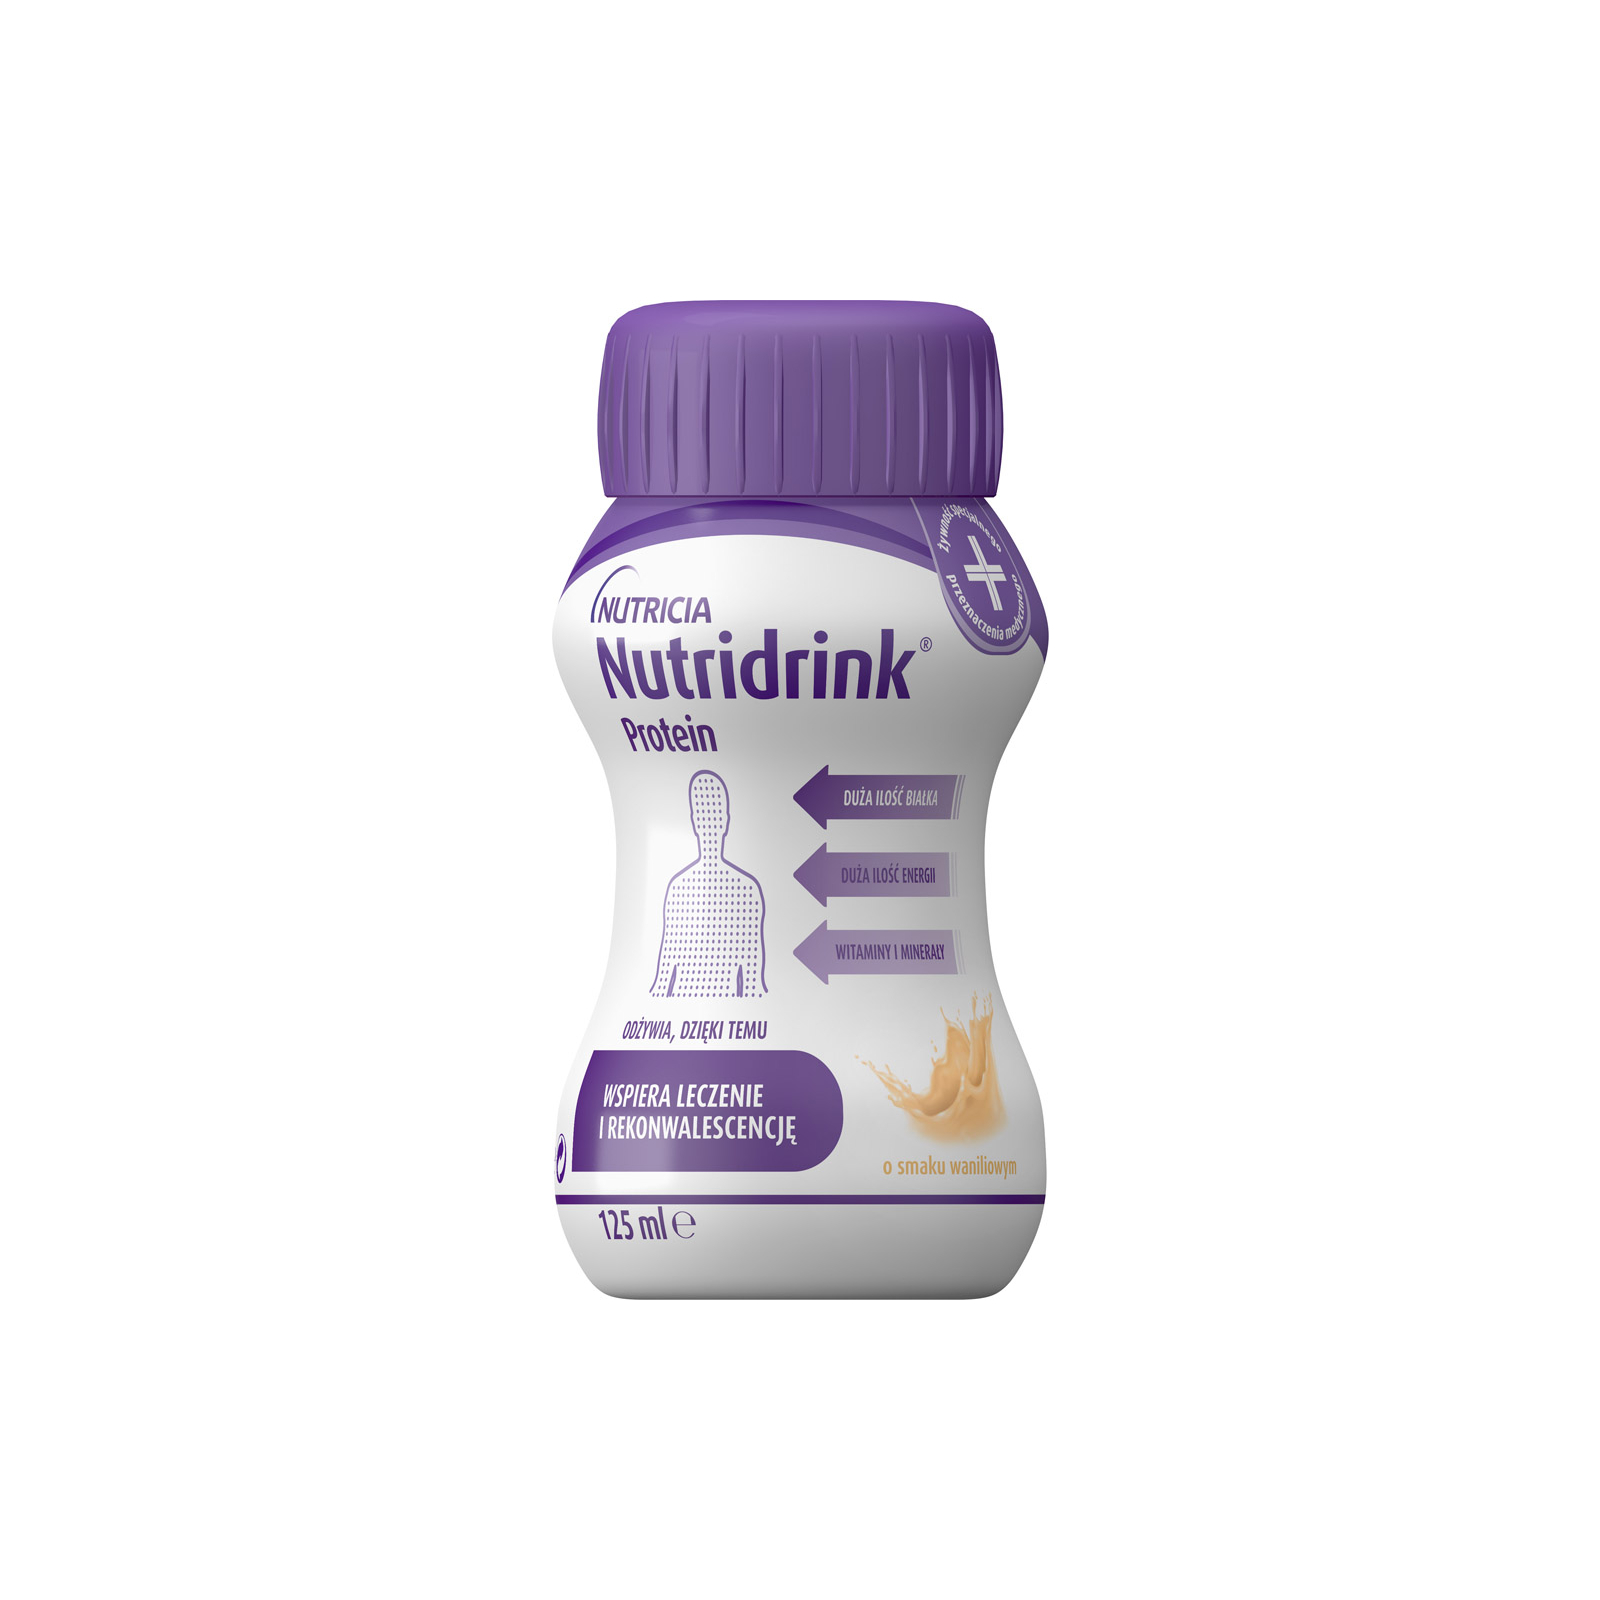 Детская смесь Nutricia Nutridrink Protein Vanilla со вкусом ванили с высоким содержанием белка и энергии 4 шт х 125 мл (8716900565403)